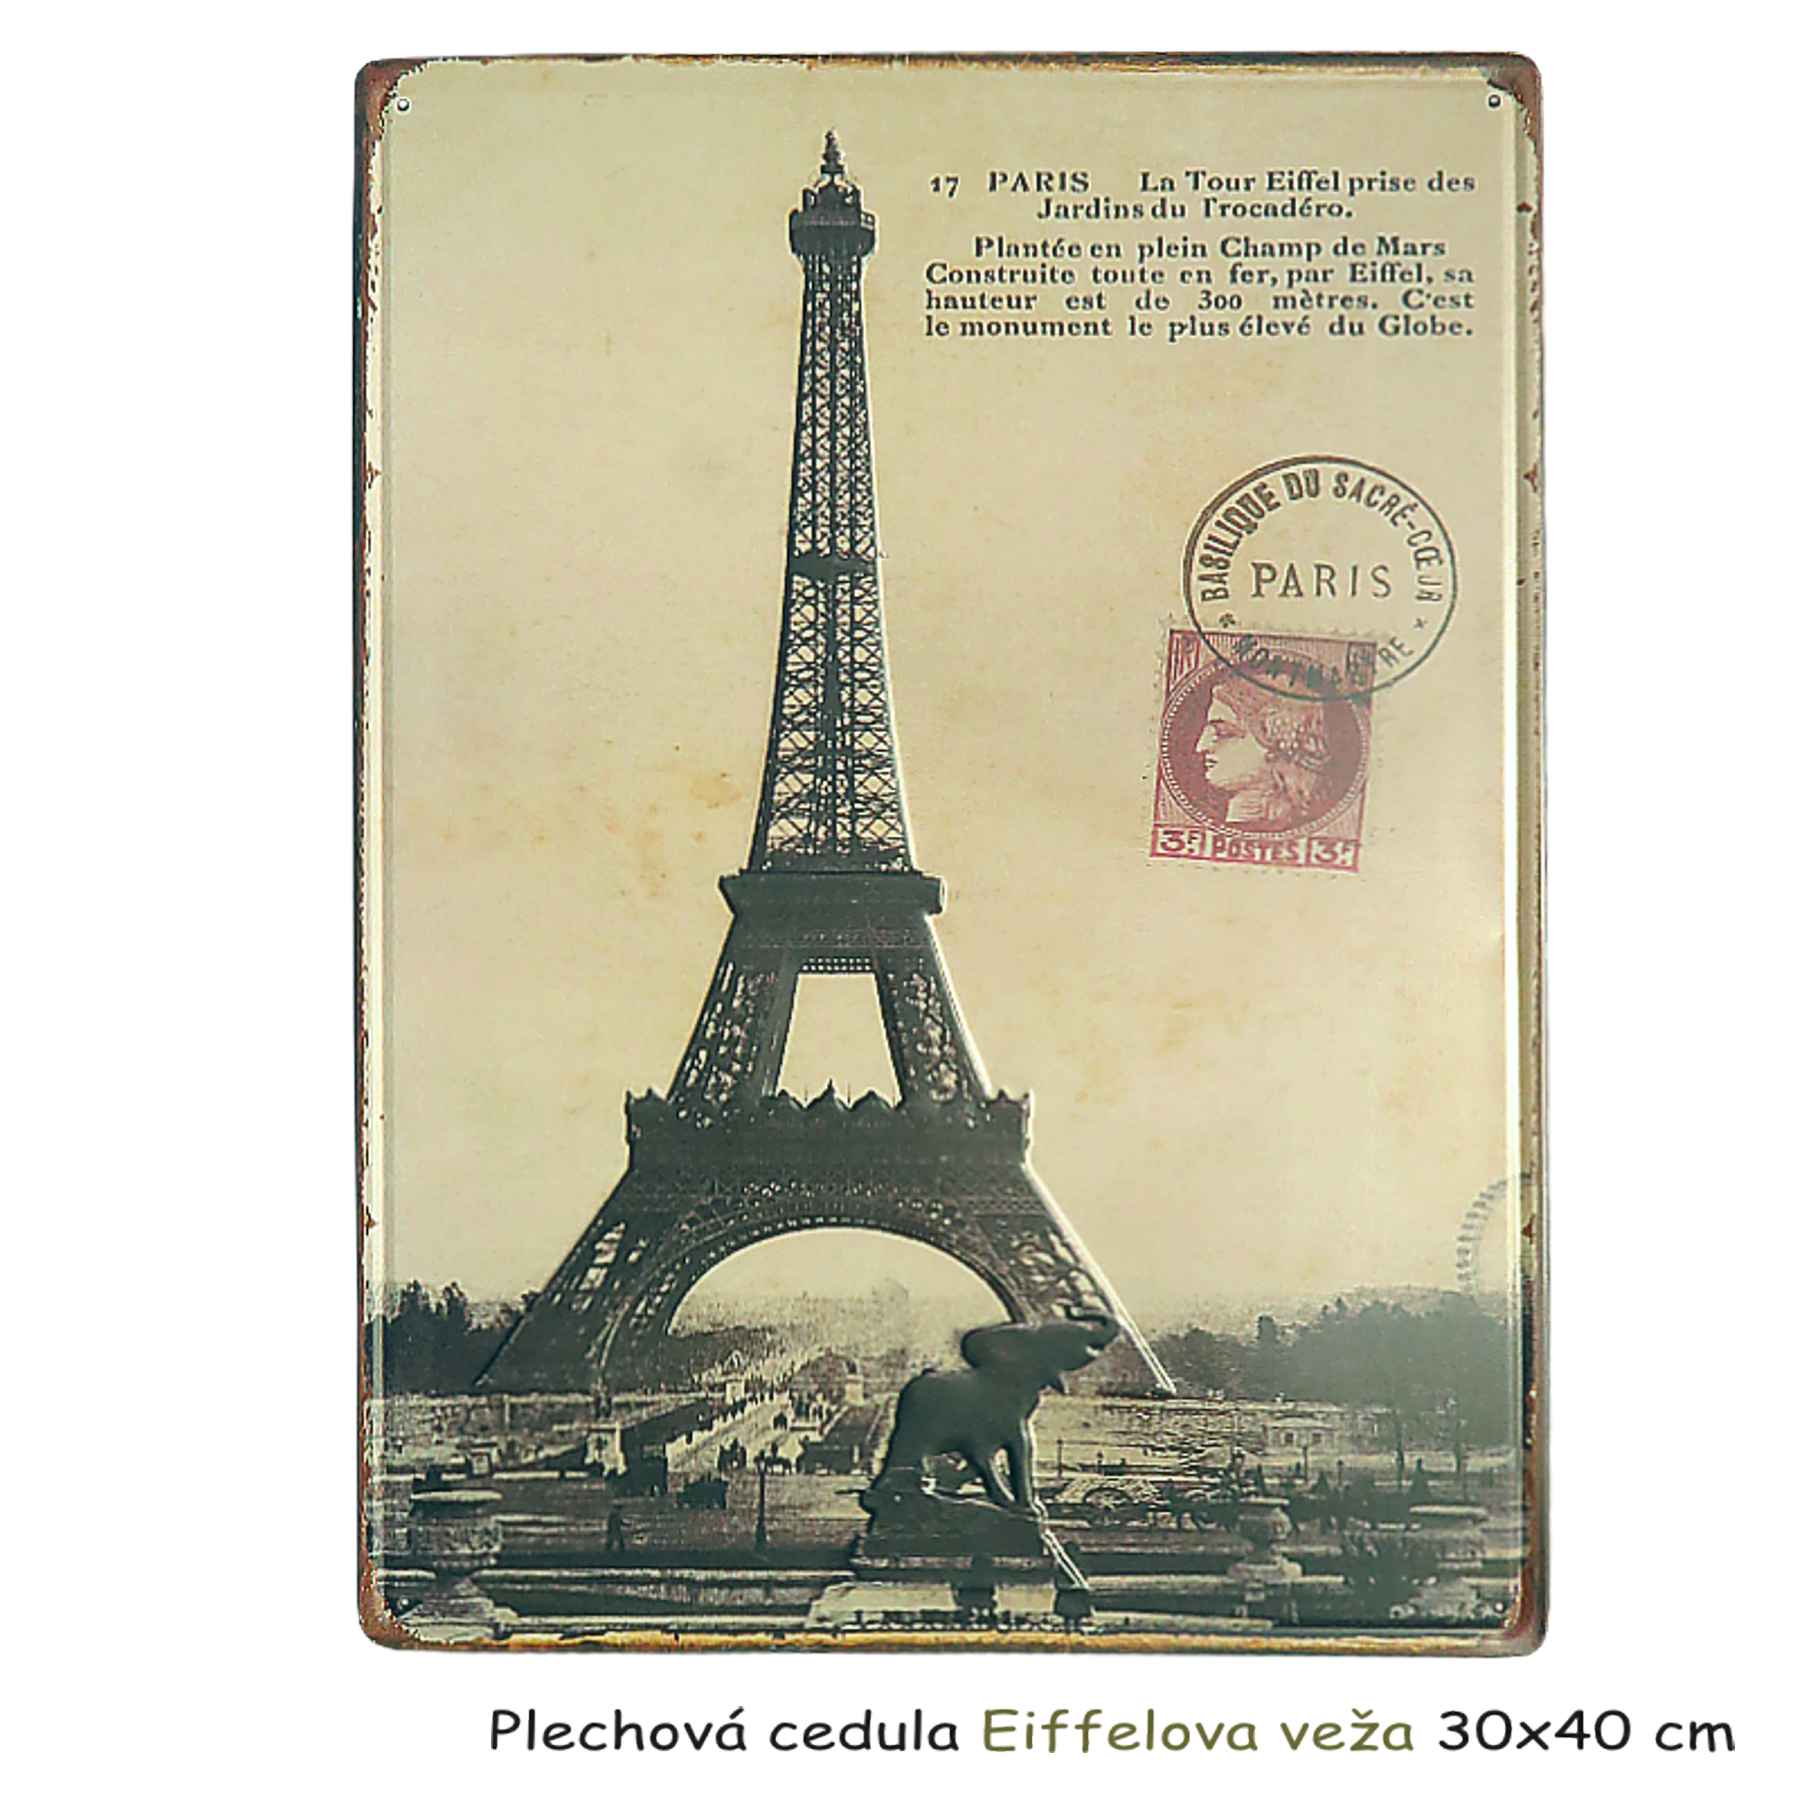 Plechová cedula Eiffelova veža